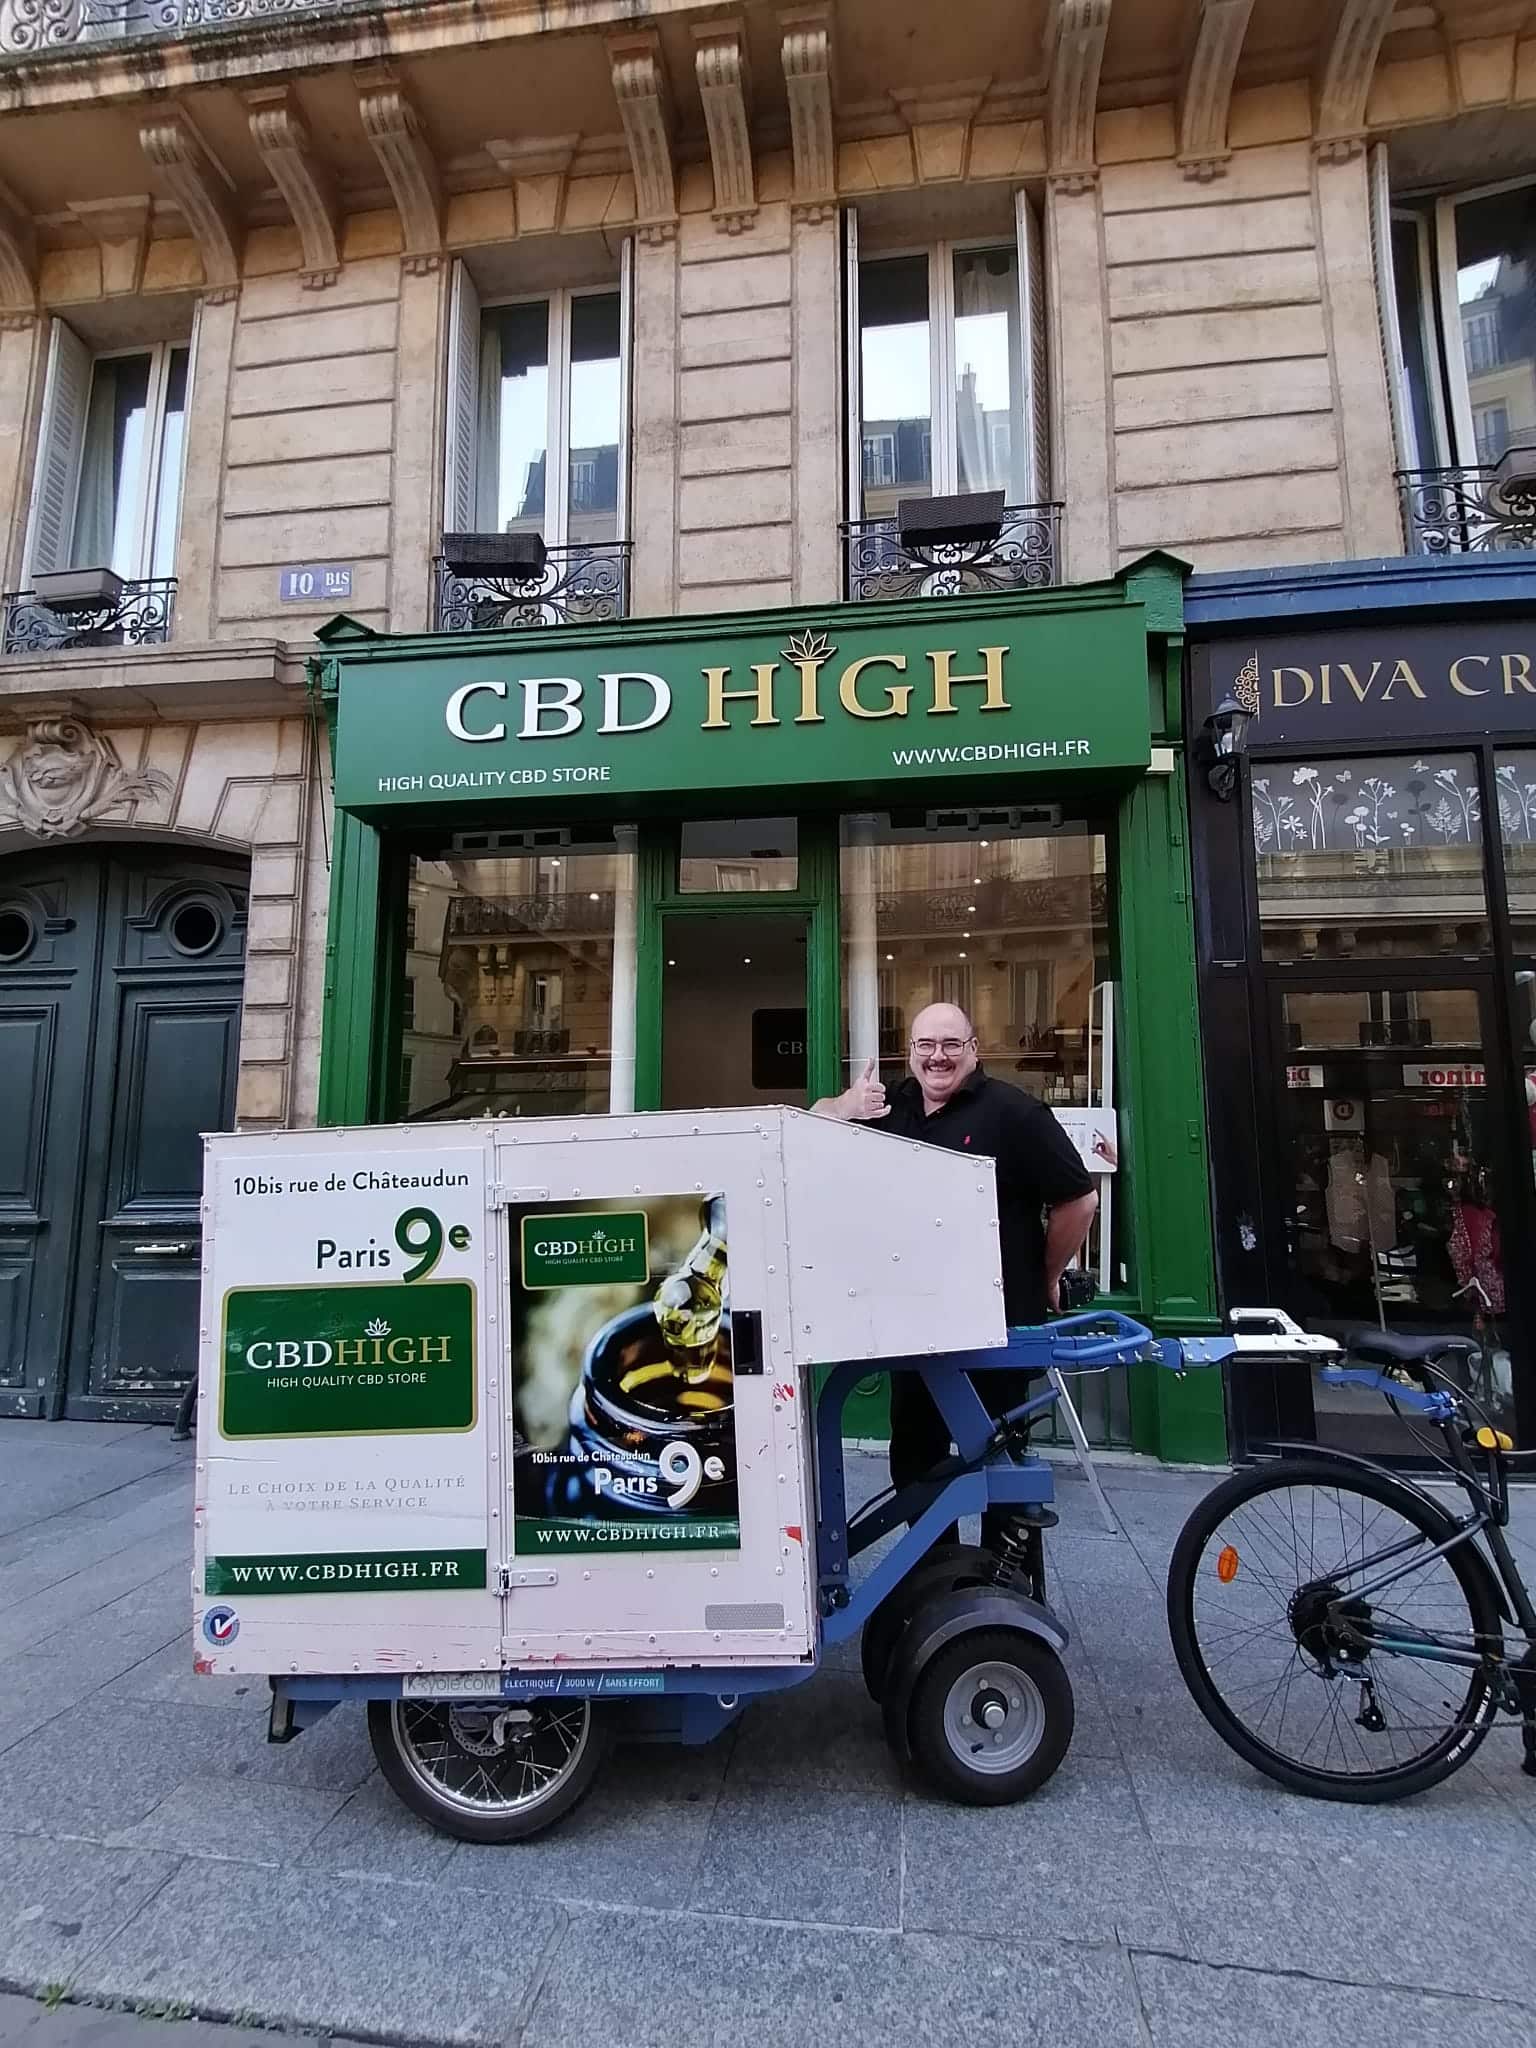 Fort de 30 ans d’expérience dans l’industrie pharmaceutique, Michel Philis défend avec ardeur les bienfaits du CBD dans sa boutique parisienne